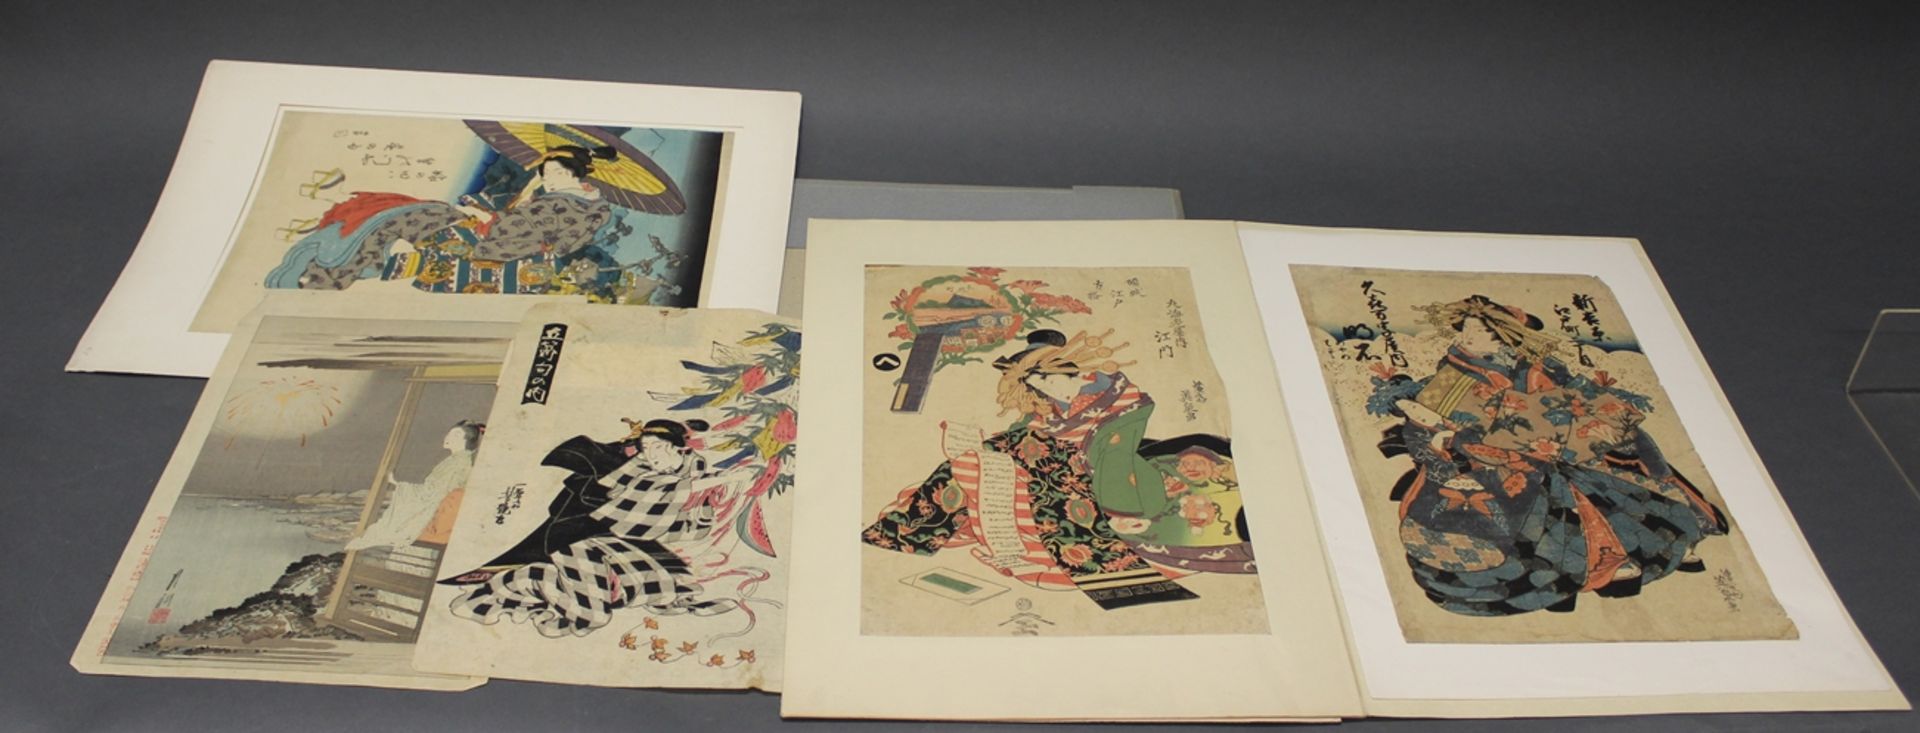 Konvolut Farbholzschnitte, 7-tlg., Japan, 19. Jh.: 5 Einzelblätter und 2 Triptychons, u.a. Eisen, K